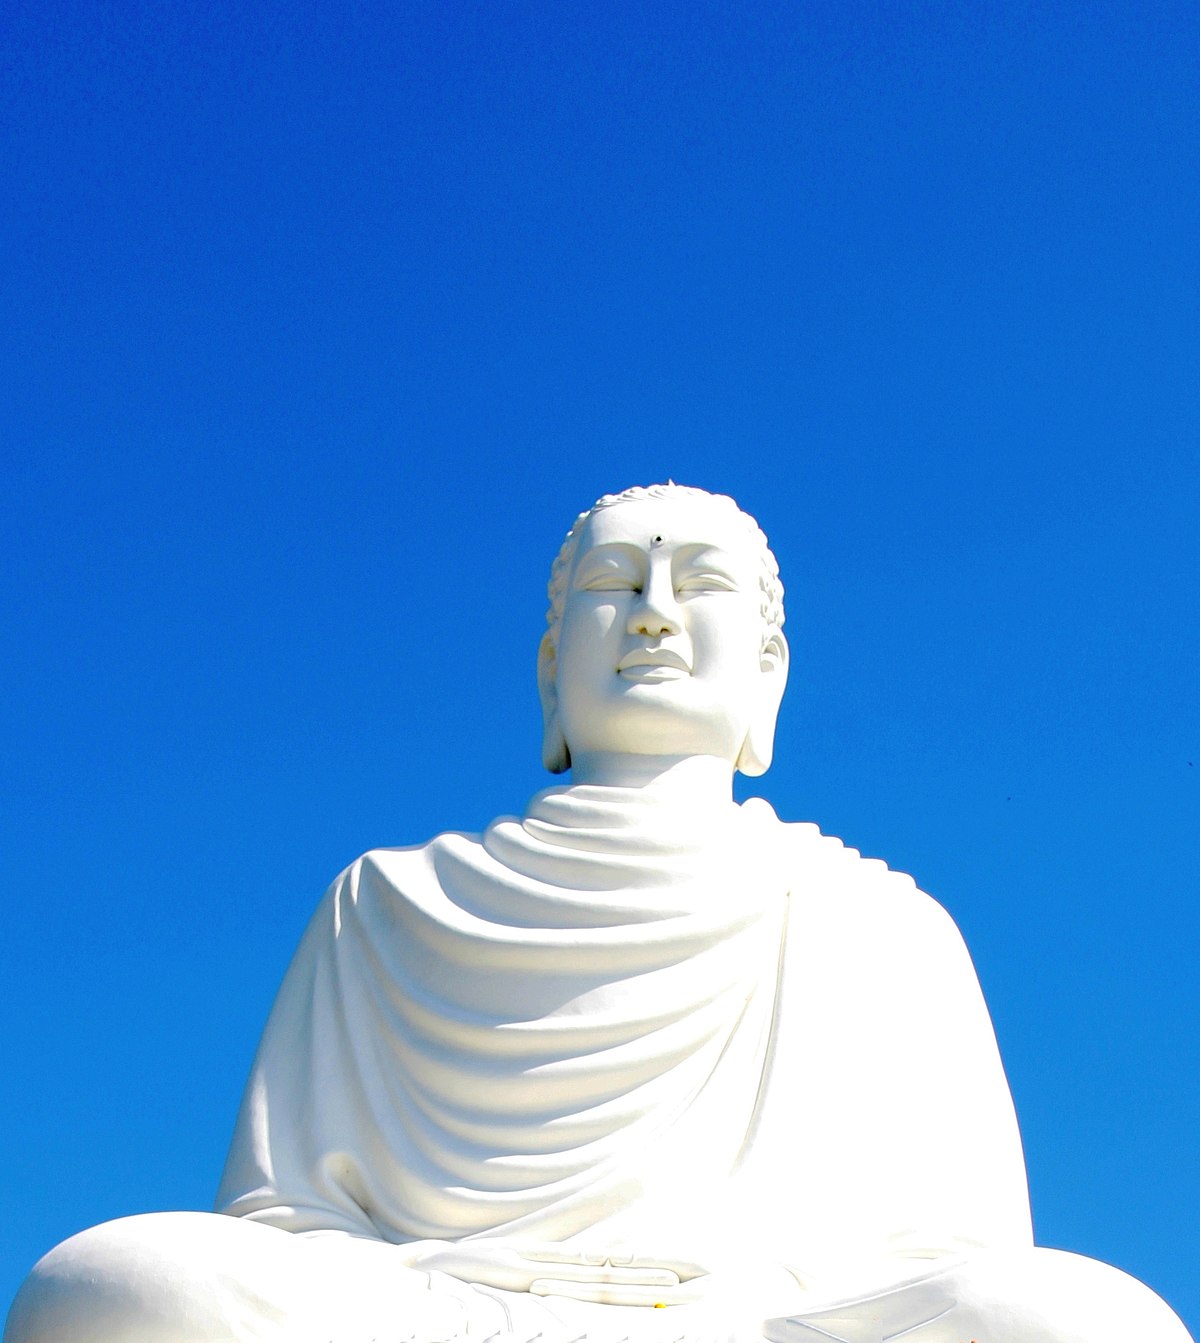 Phật giáo Việt Nam – Wikipedia tiếng Việt